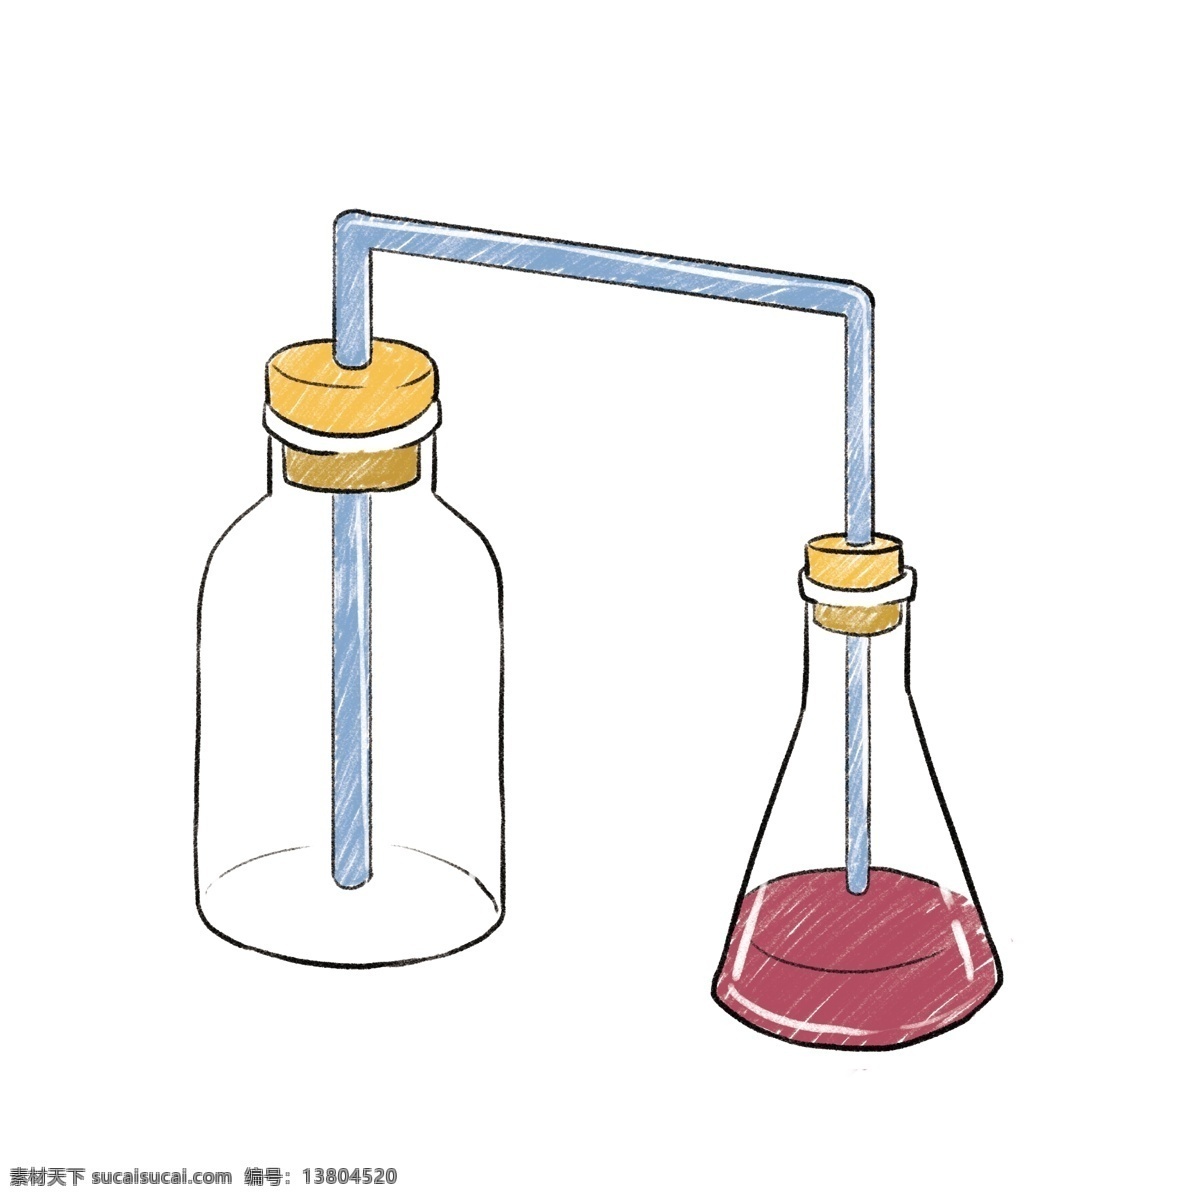 白色 瓶子 实验 插图 实验室用品 白色瓶子 红色液体 红色药水 小清新 简约风 实验插画 化学实验用品